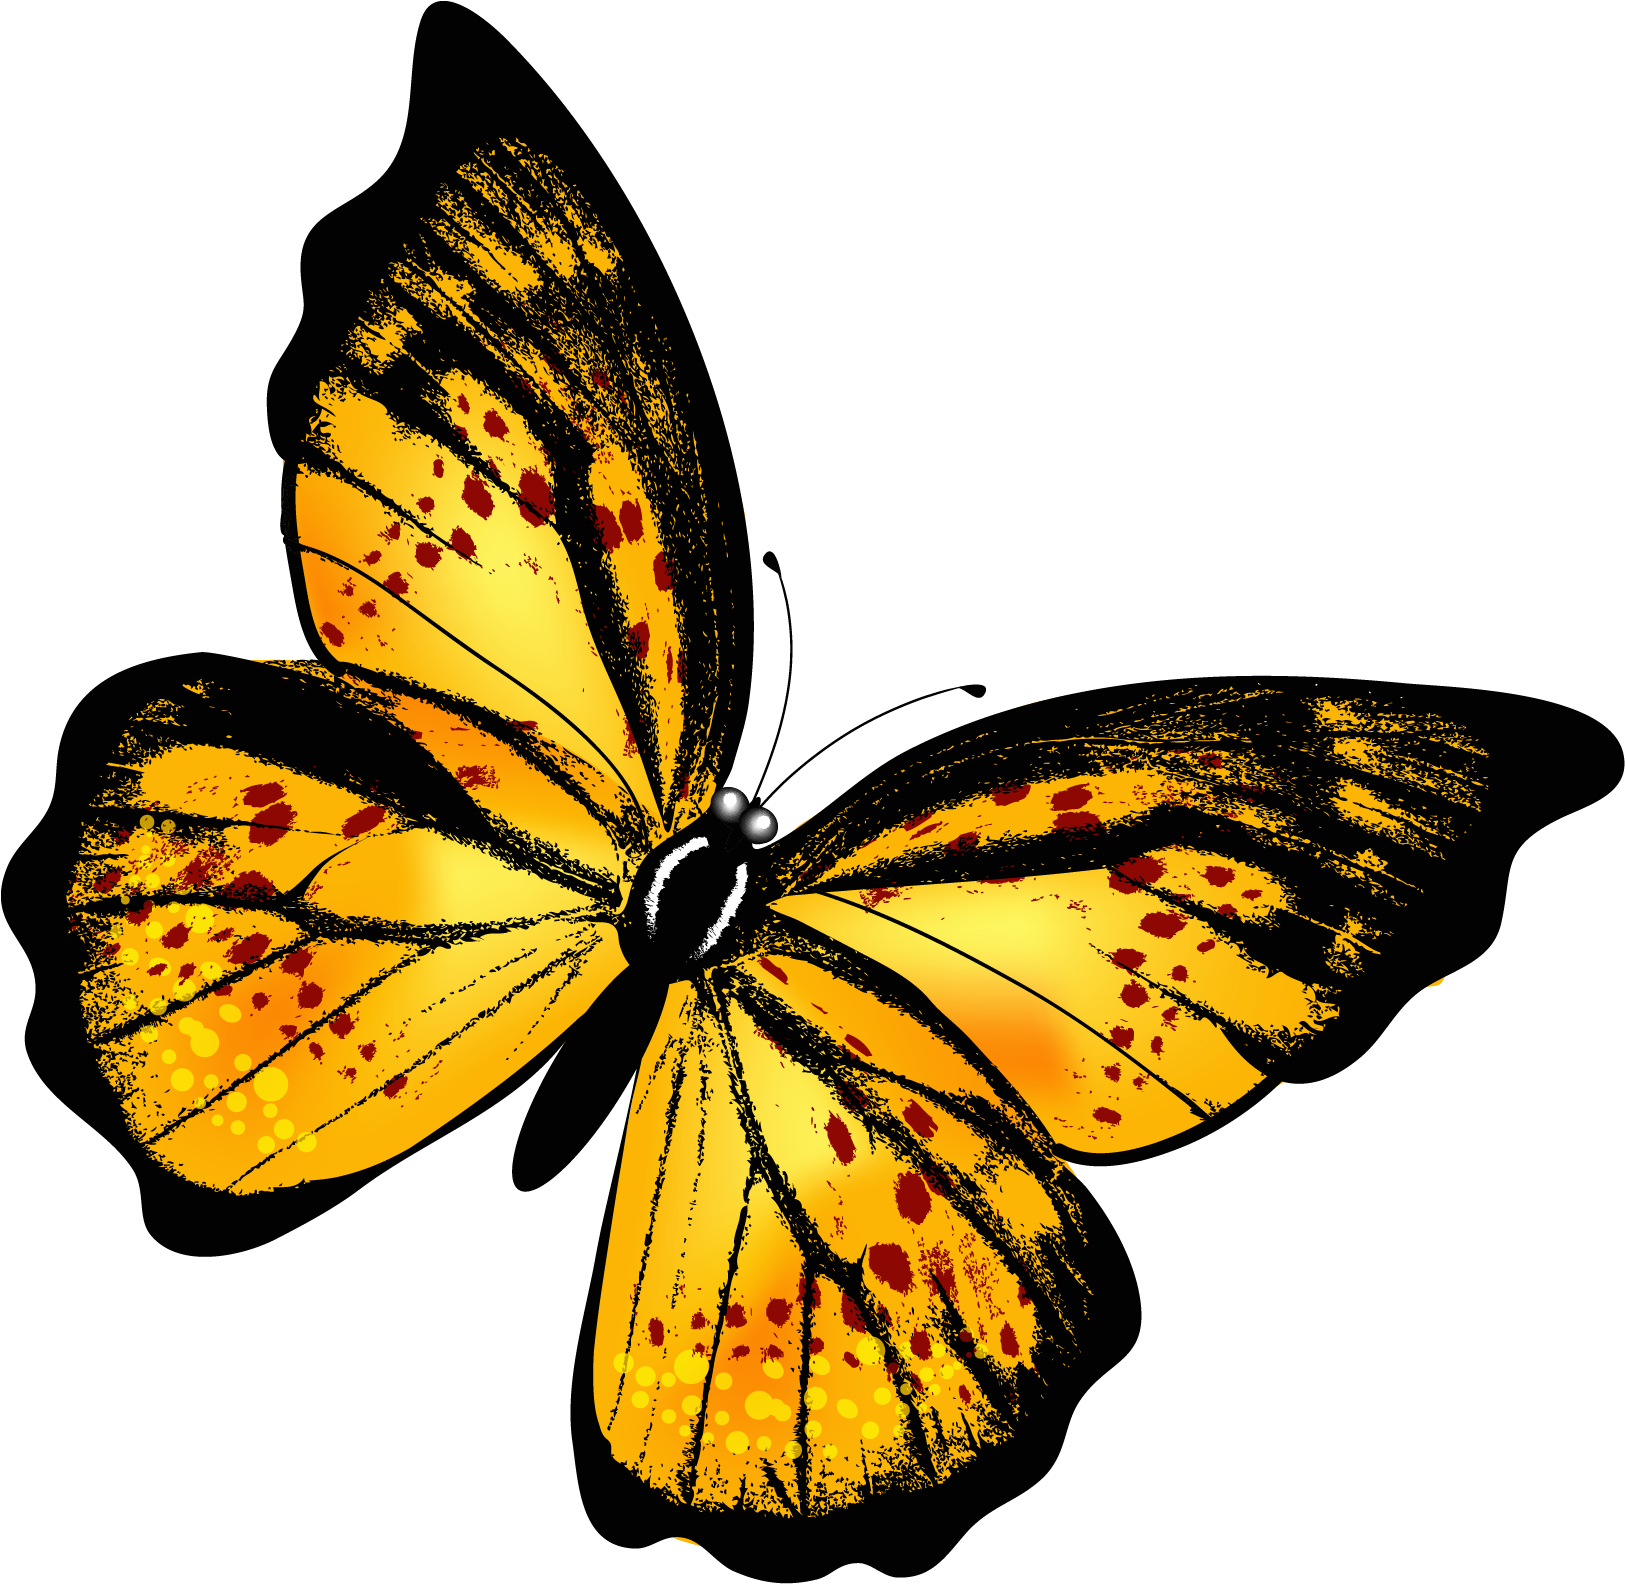 Картинки на прозрачном фоне разное. Бабочки на белом фоне. Жёлтая бабочка. Бабосики на прозрачном фоне. Бабочки на просроченном фоне.